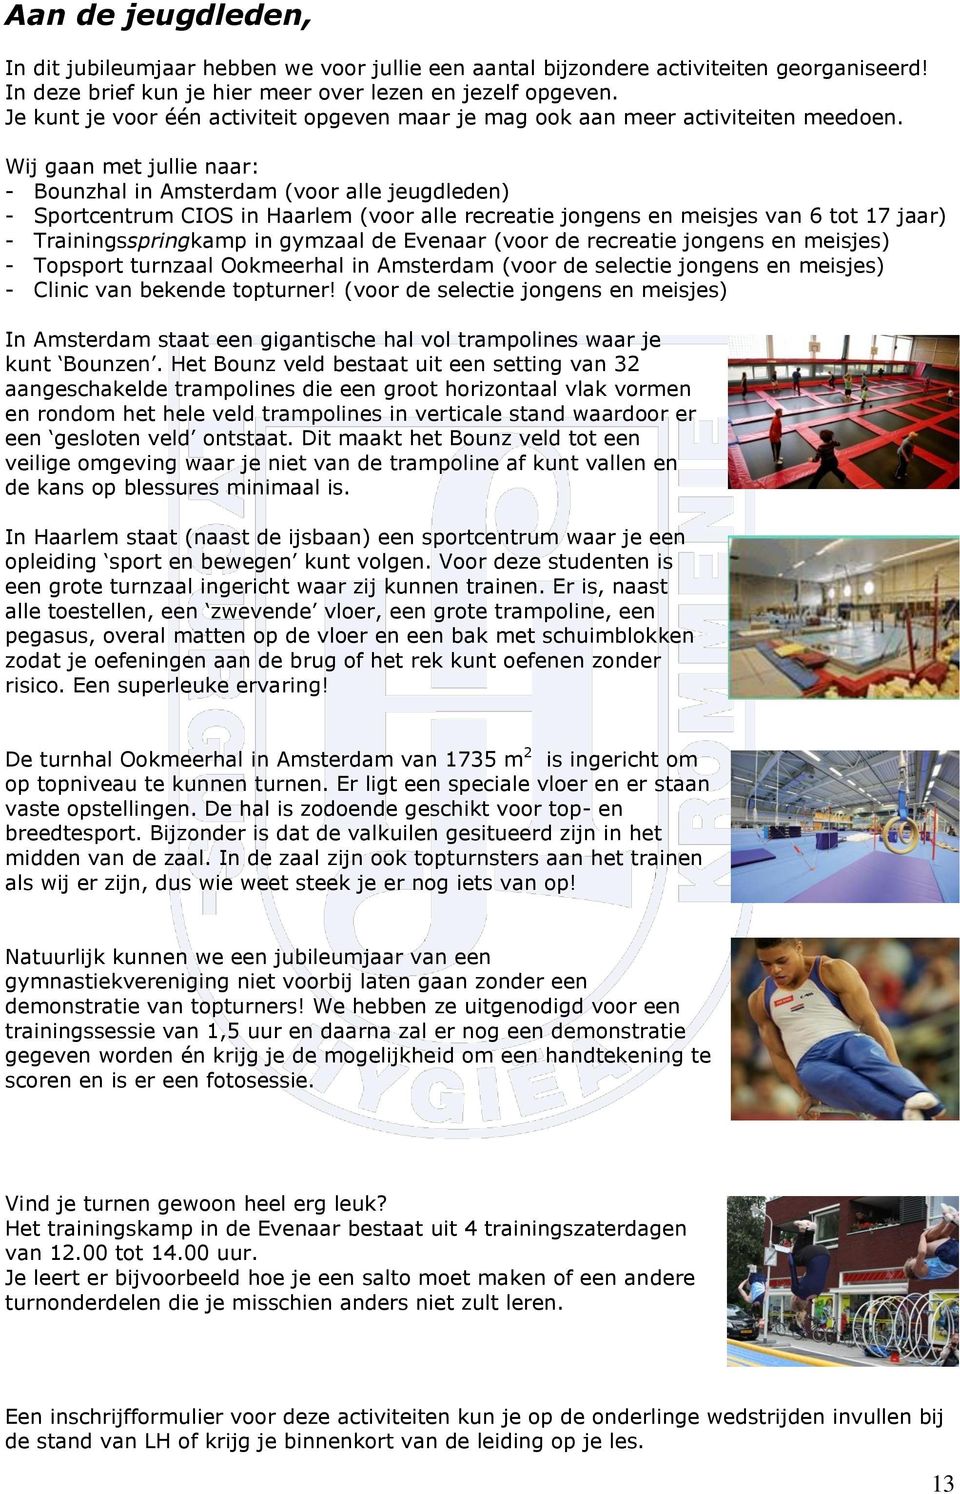 Wij gaan met jullie naar: - Bounzhal in Amsterdam (voor alle jeugdleden) - Sportcentrum CIOS in Haarlem (voor alle recreatie jongens en meisjes van 6 tot 17 jaar) - Trainingsspringkamp in gymzaal de